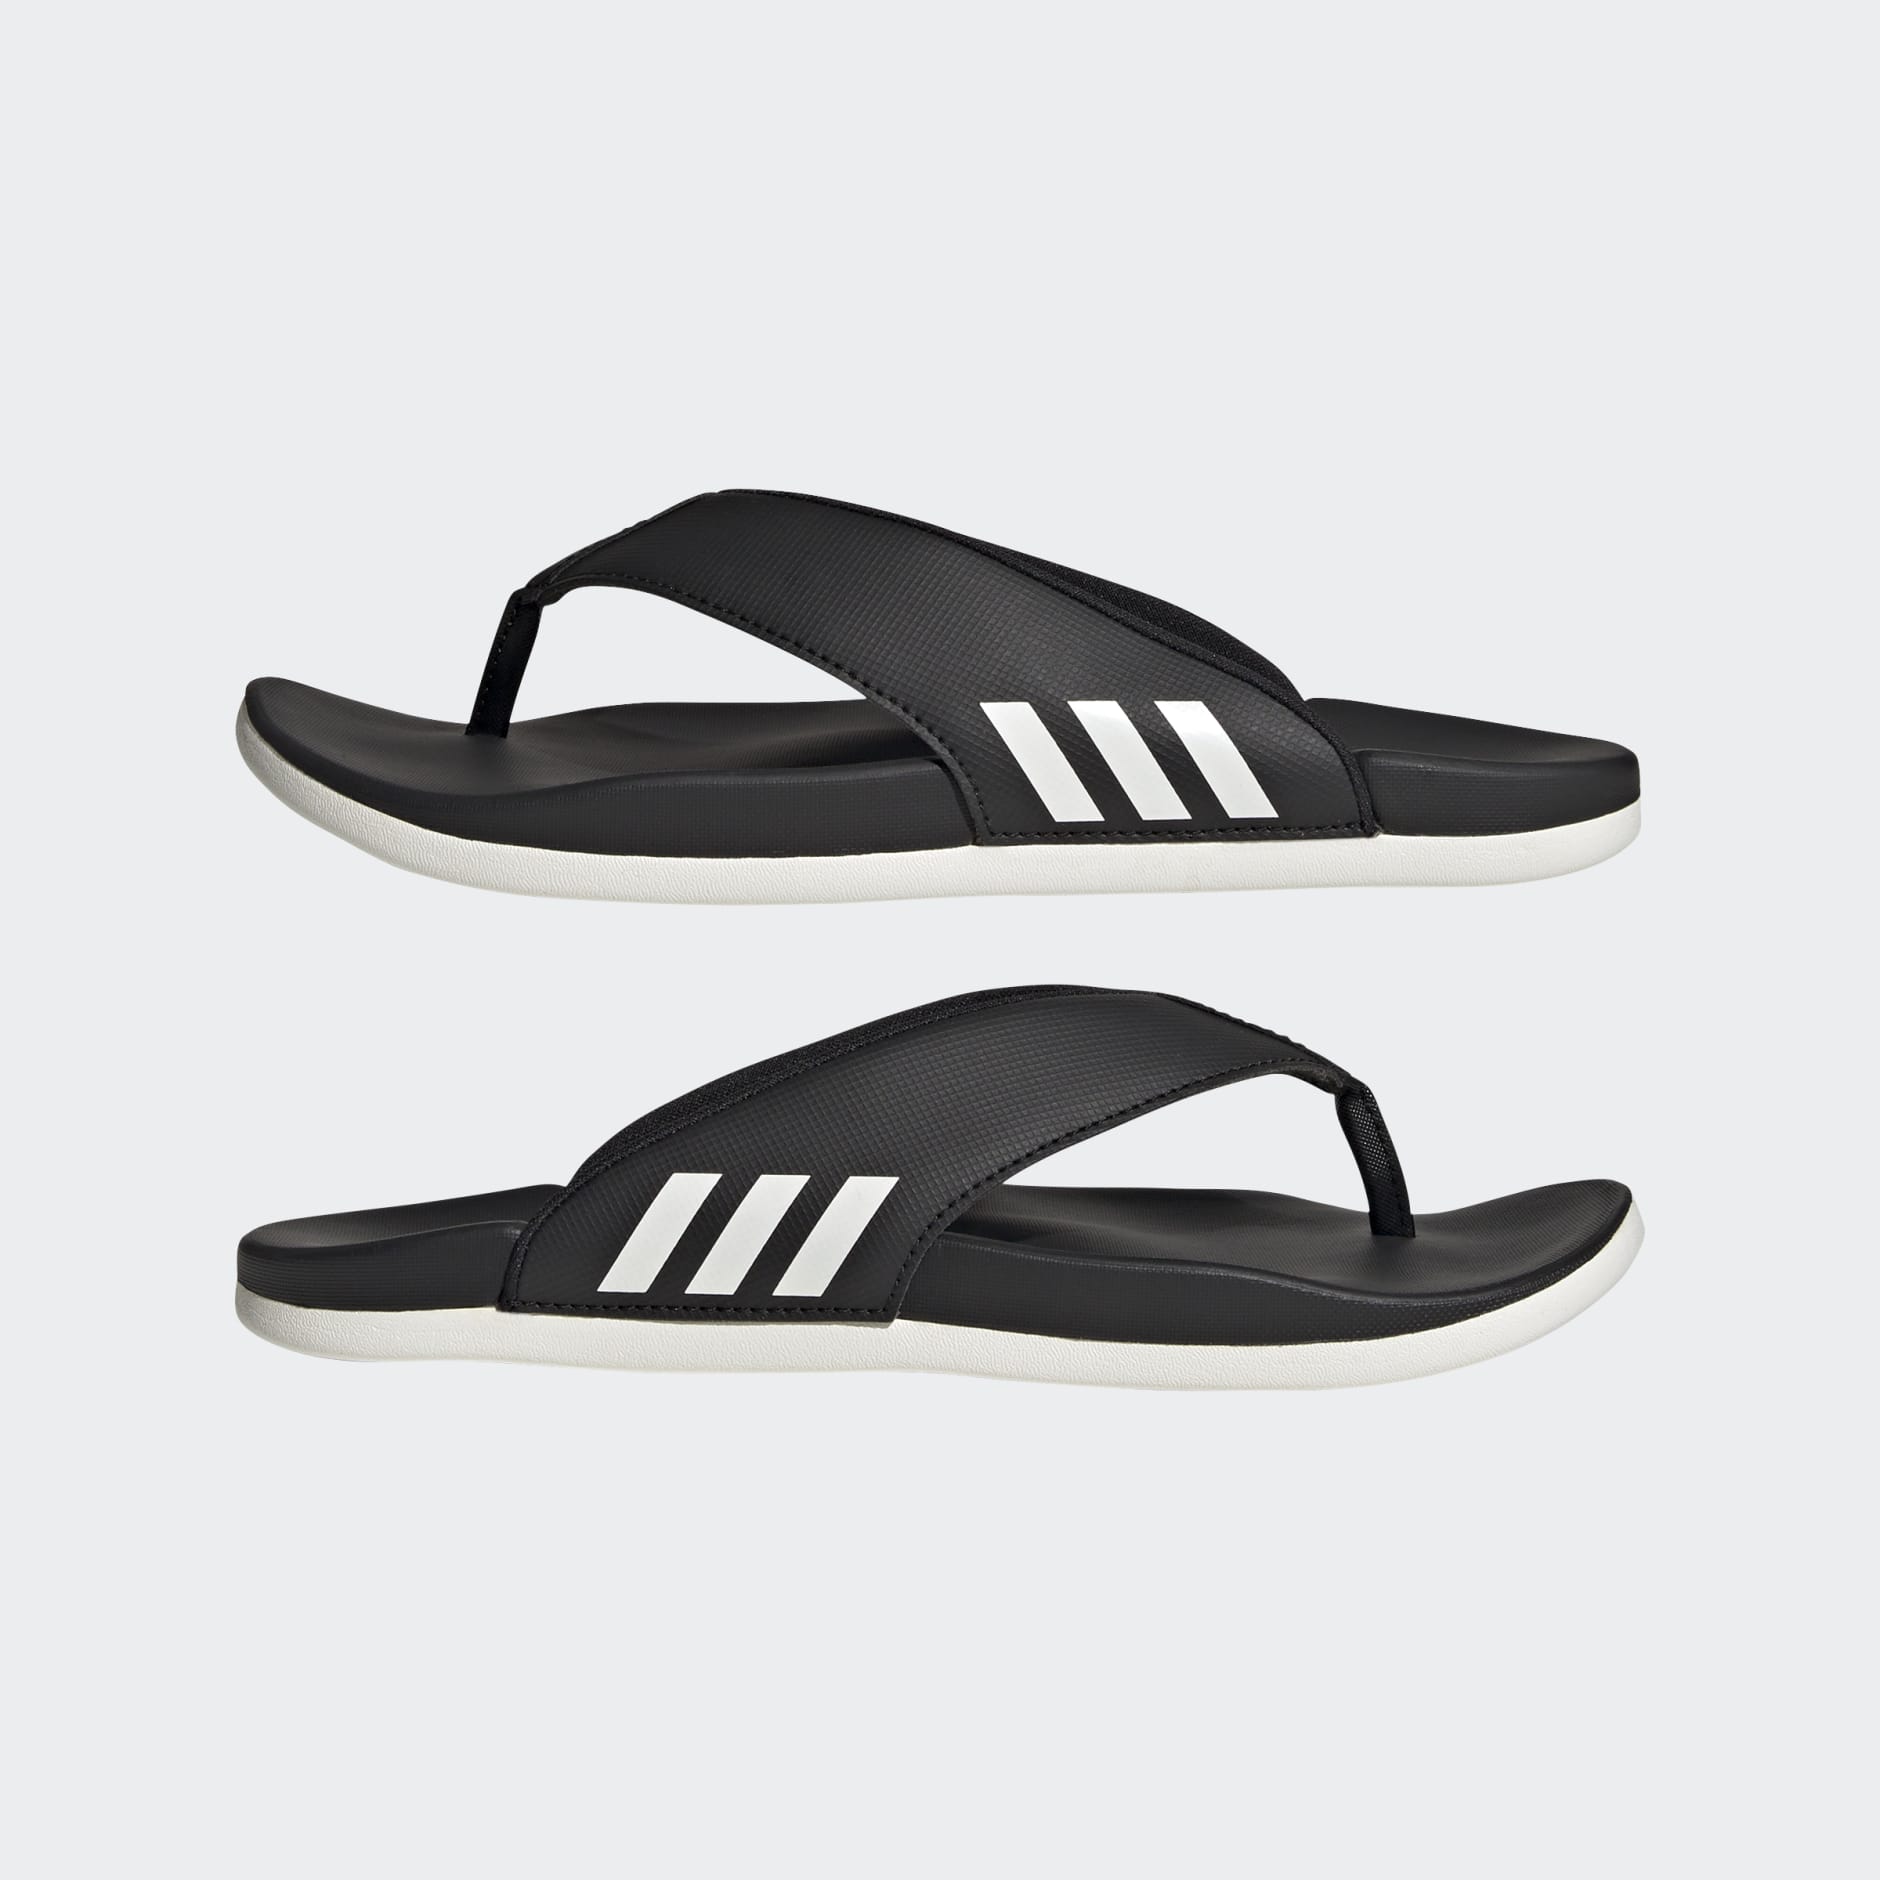 Adidas Men Adilette Shower Slipper Red Shoes Slide Beach Casual Slippers  HQ6882 | eBay